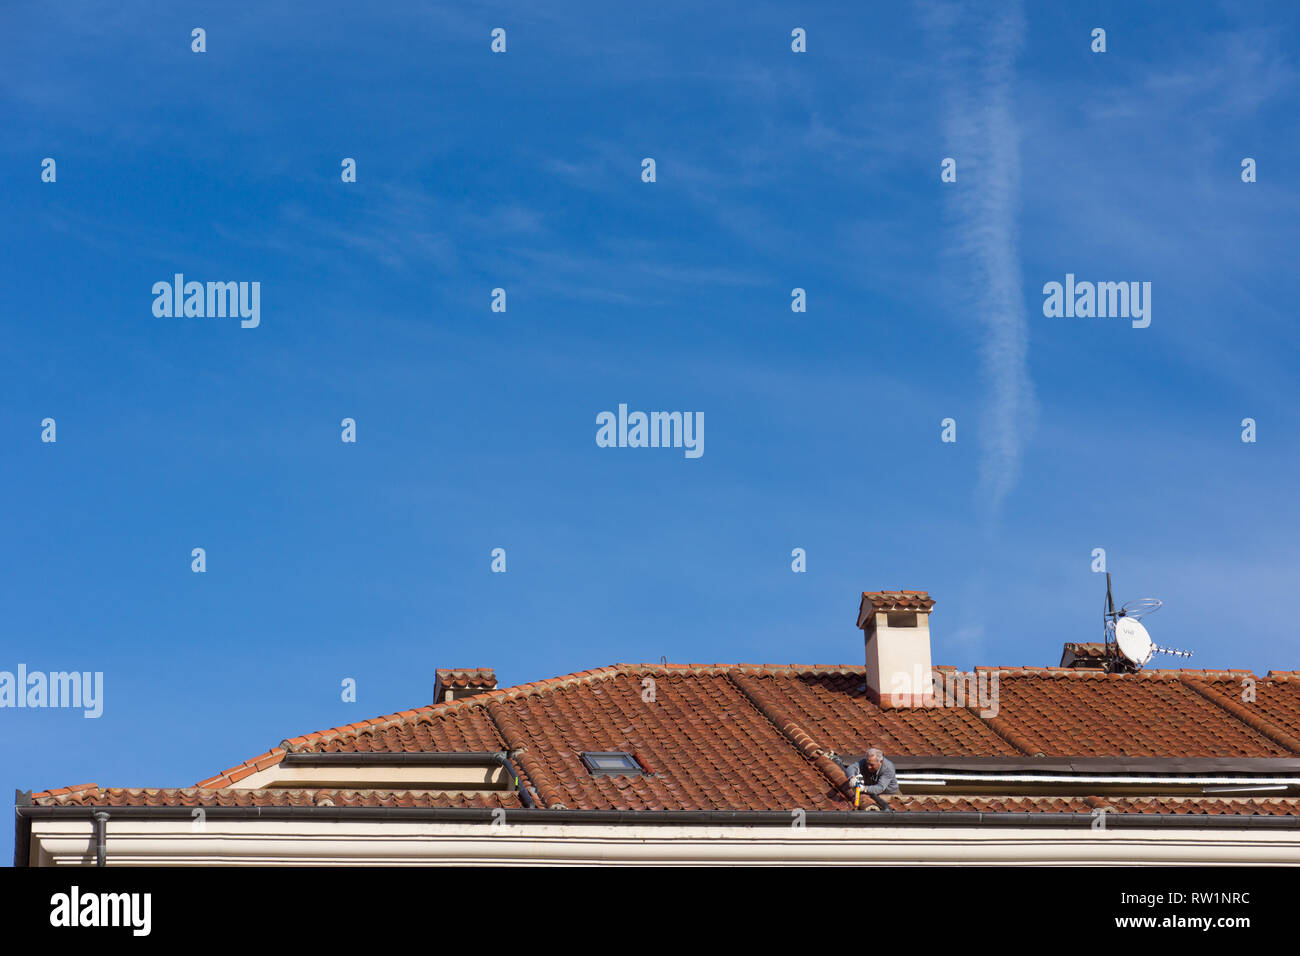 Uomo appoggiato da un tetto a terrazza masticing, il sigillante al silicio, fissaggio, tenuta, terracotta tegole del tetto in Spagna. Foto Stock